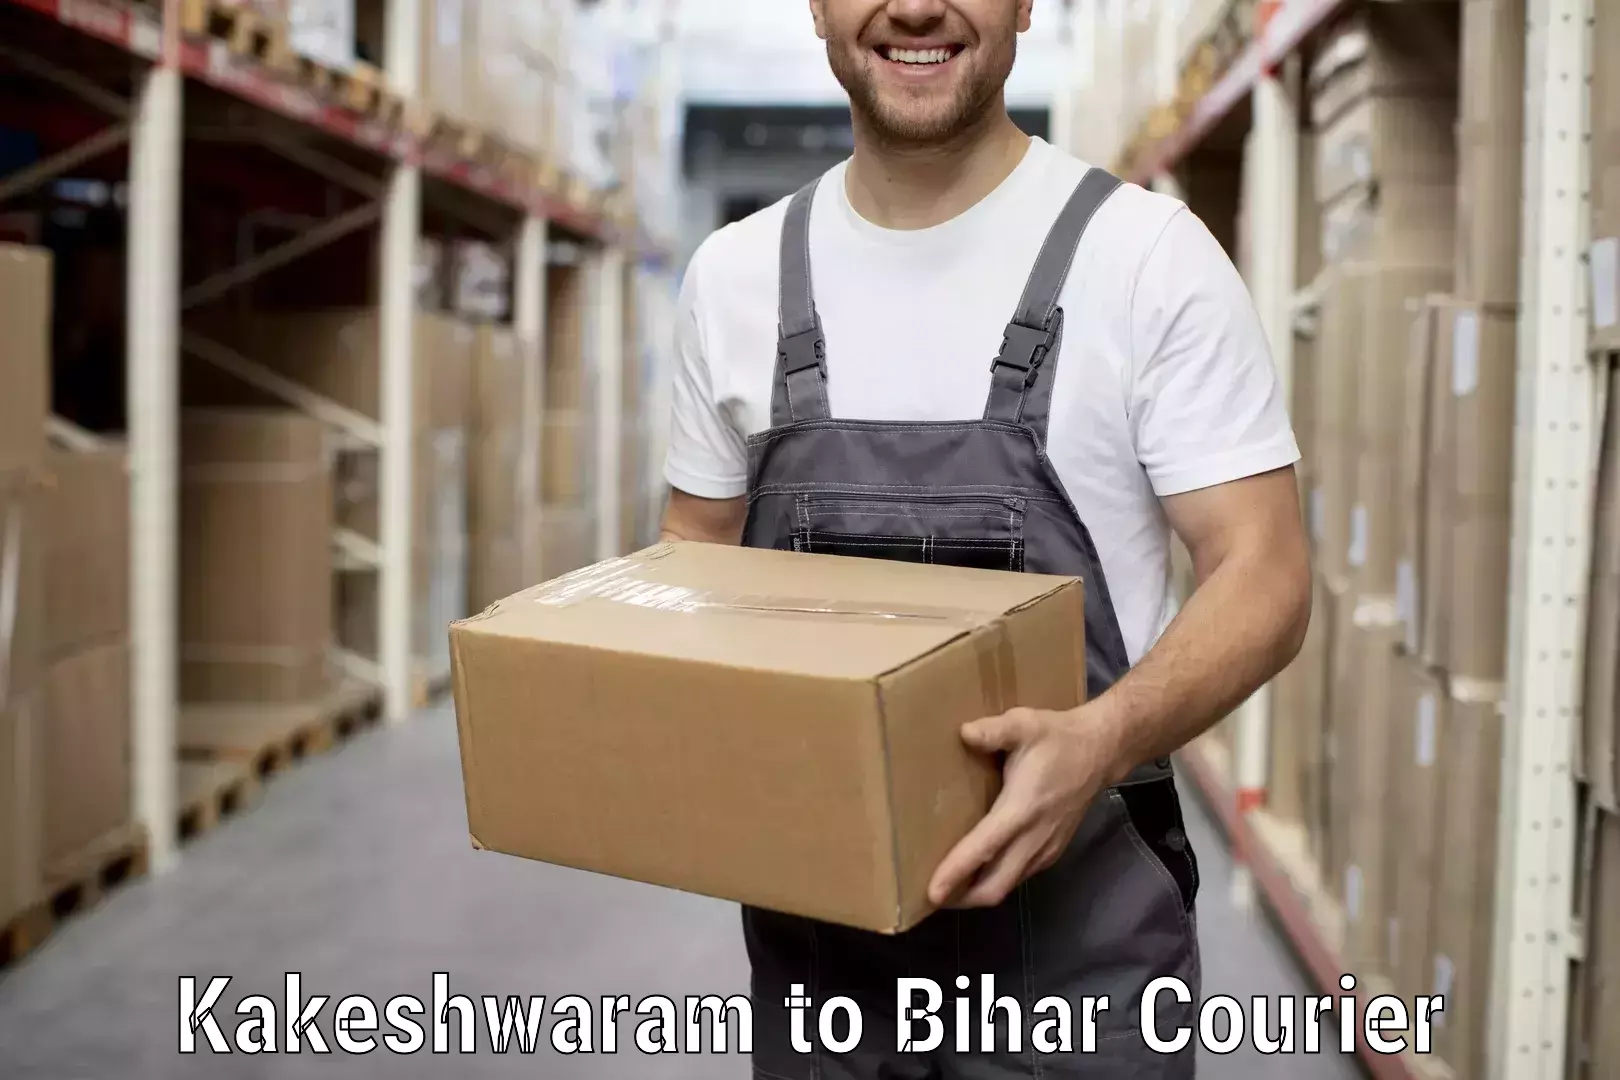 Furniture transport professionals Kakeshwaram to Dholi Moraul